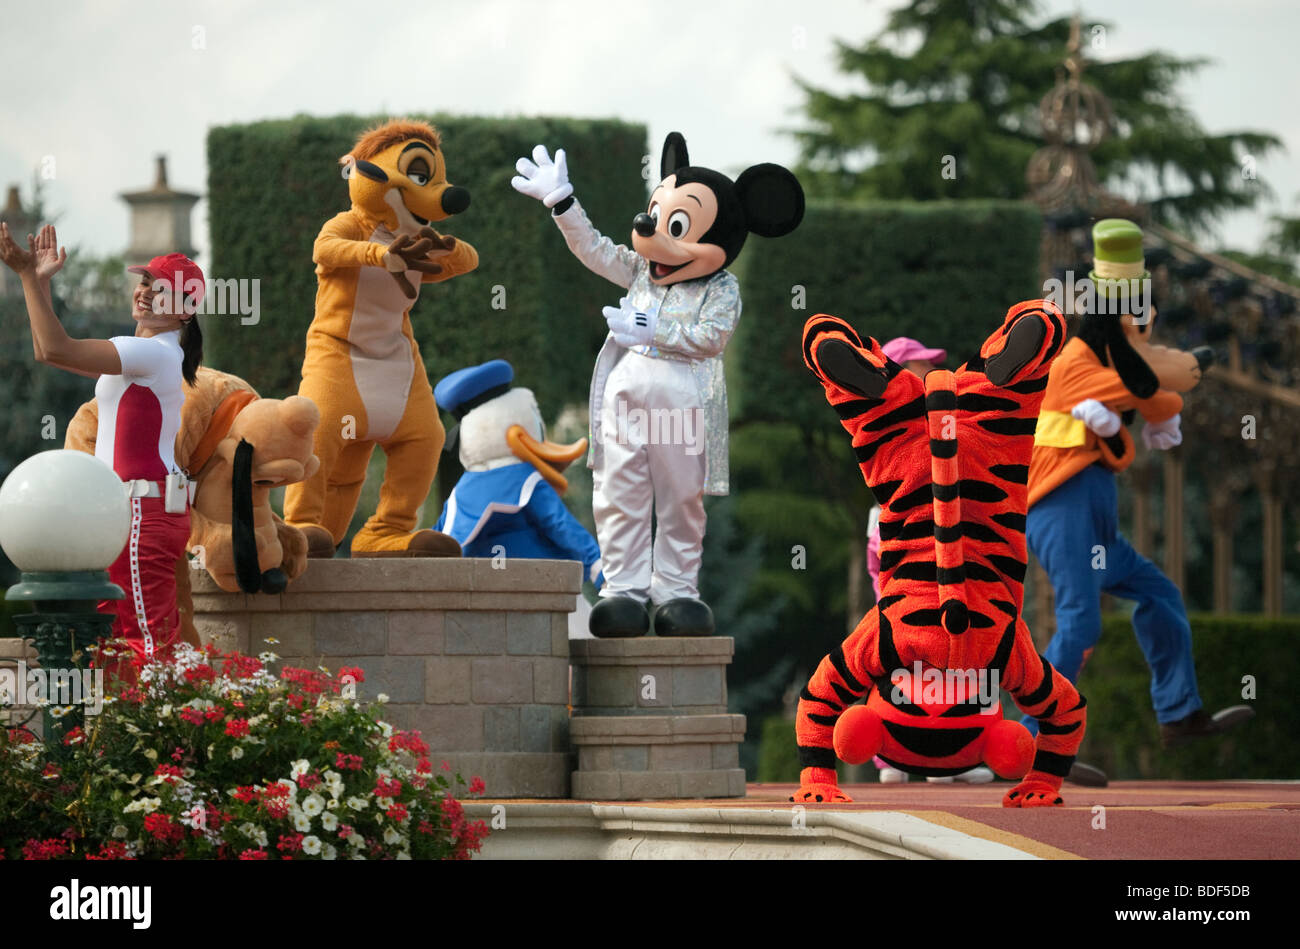 Personnages Disney en costume, Disneyland, Paris, France, Europe Banque D'Images